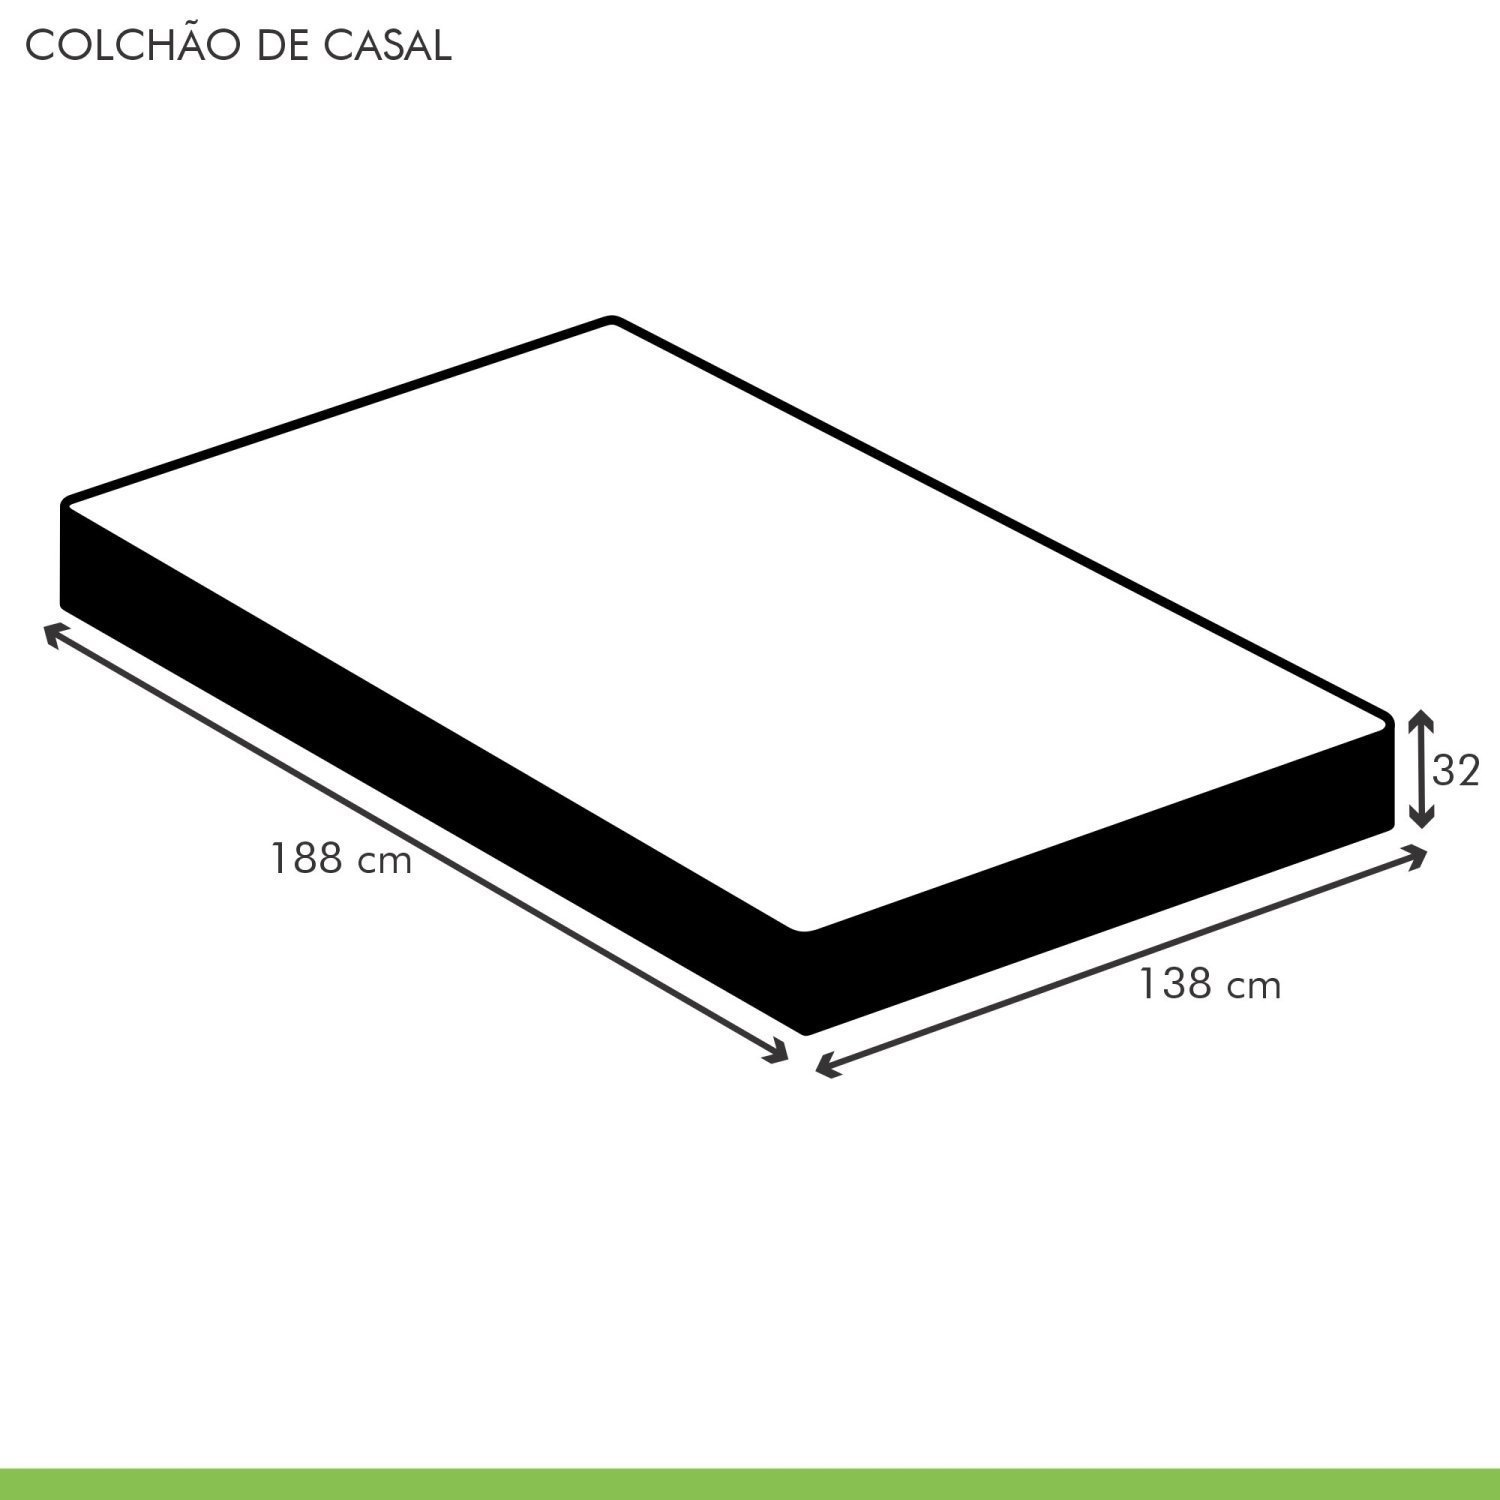 Colchão Casal Florença Extrapedic 32x138x188cm  - 5